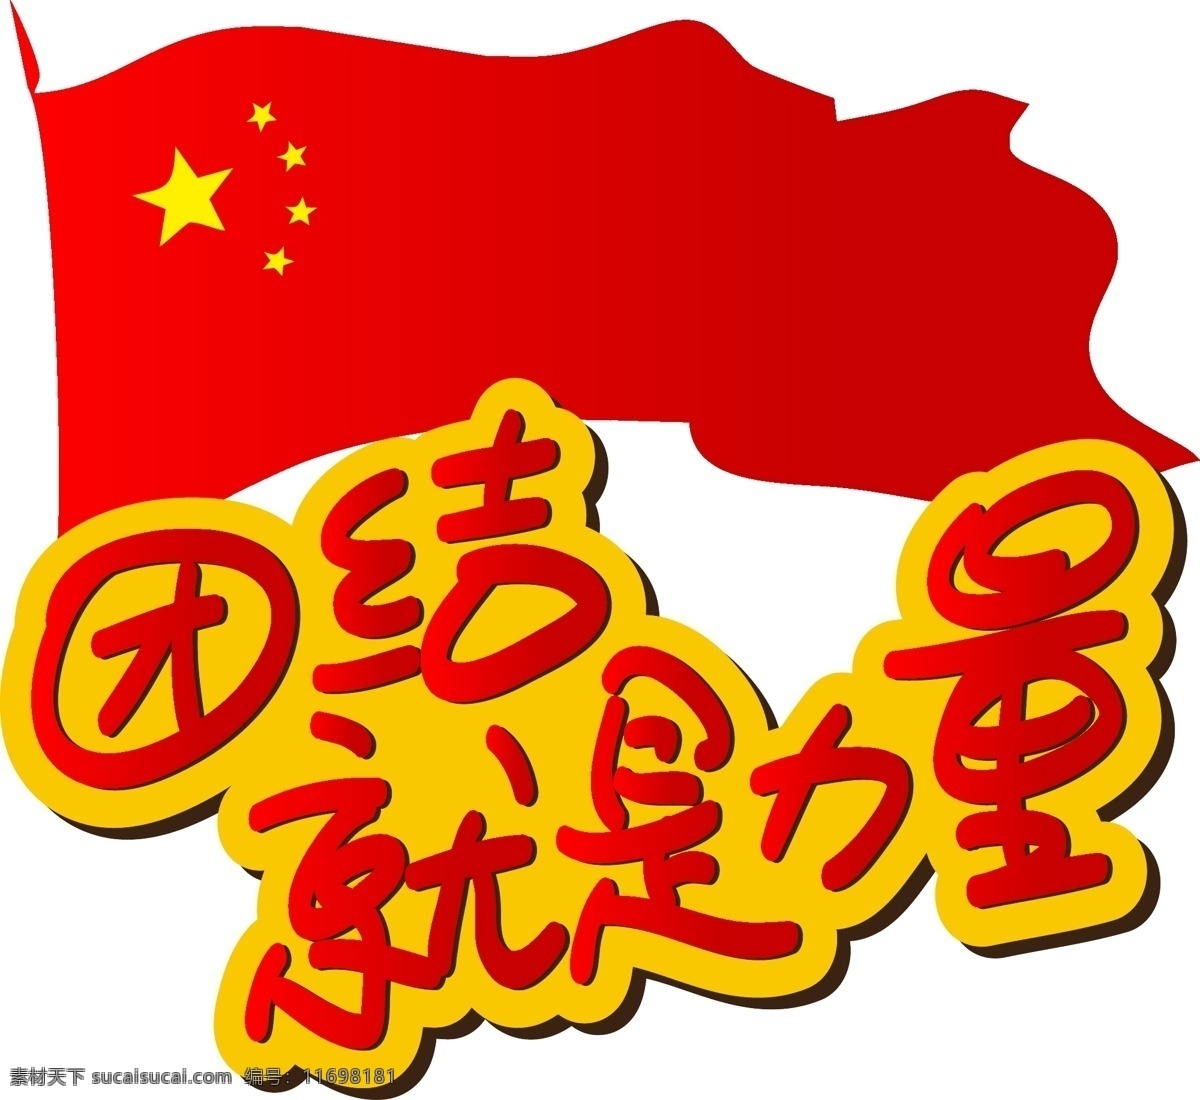 团结 就是 力量 手写 手绘 pop 卡通 矢量 艺术 字 团结就是力量 爱国 祖国 国家 骄傲 中国 自豪